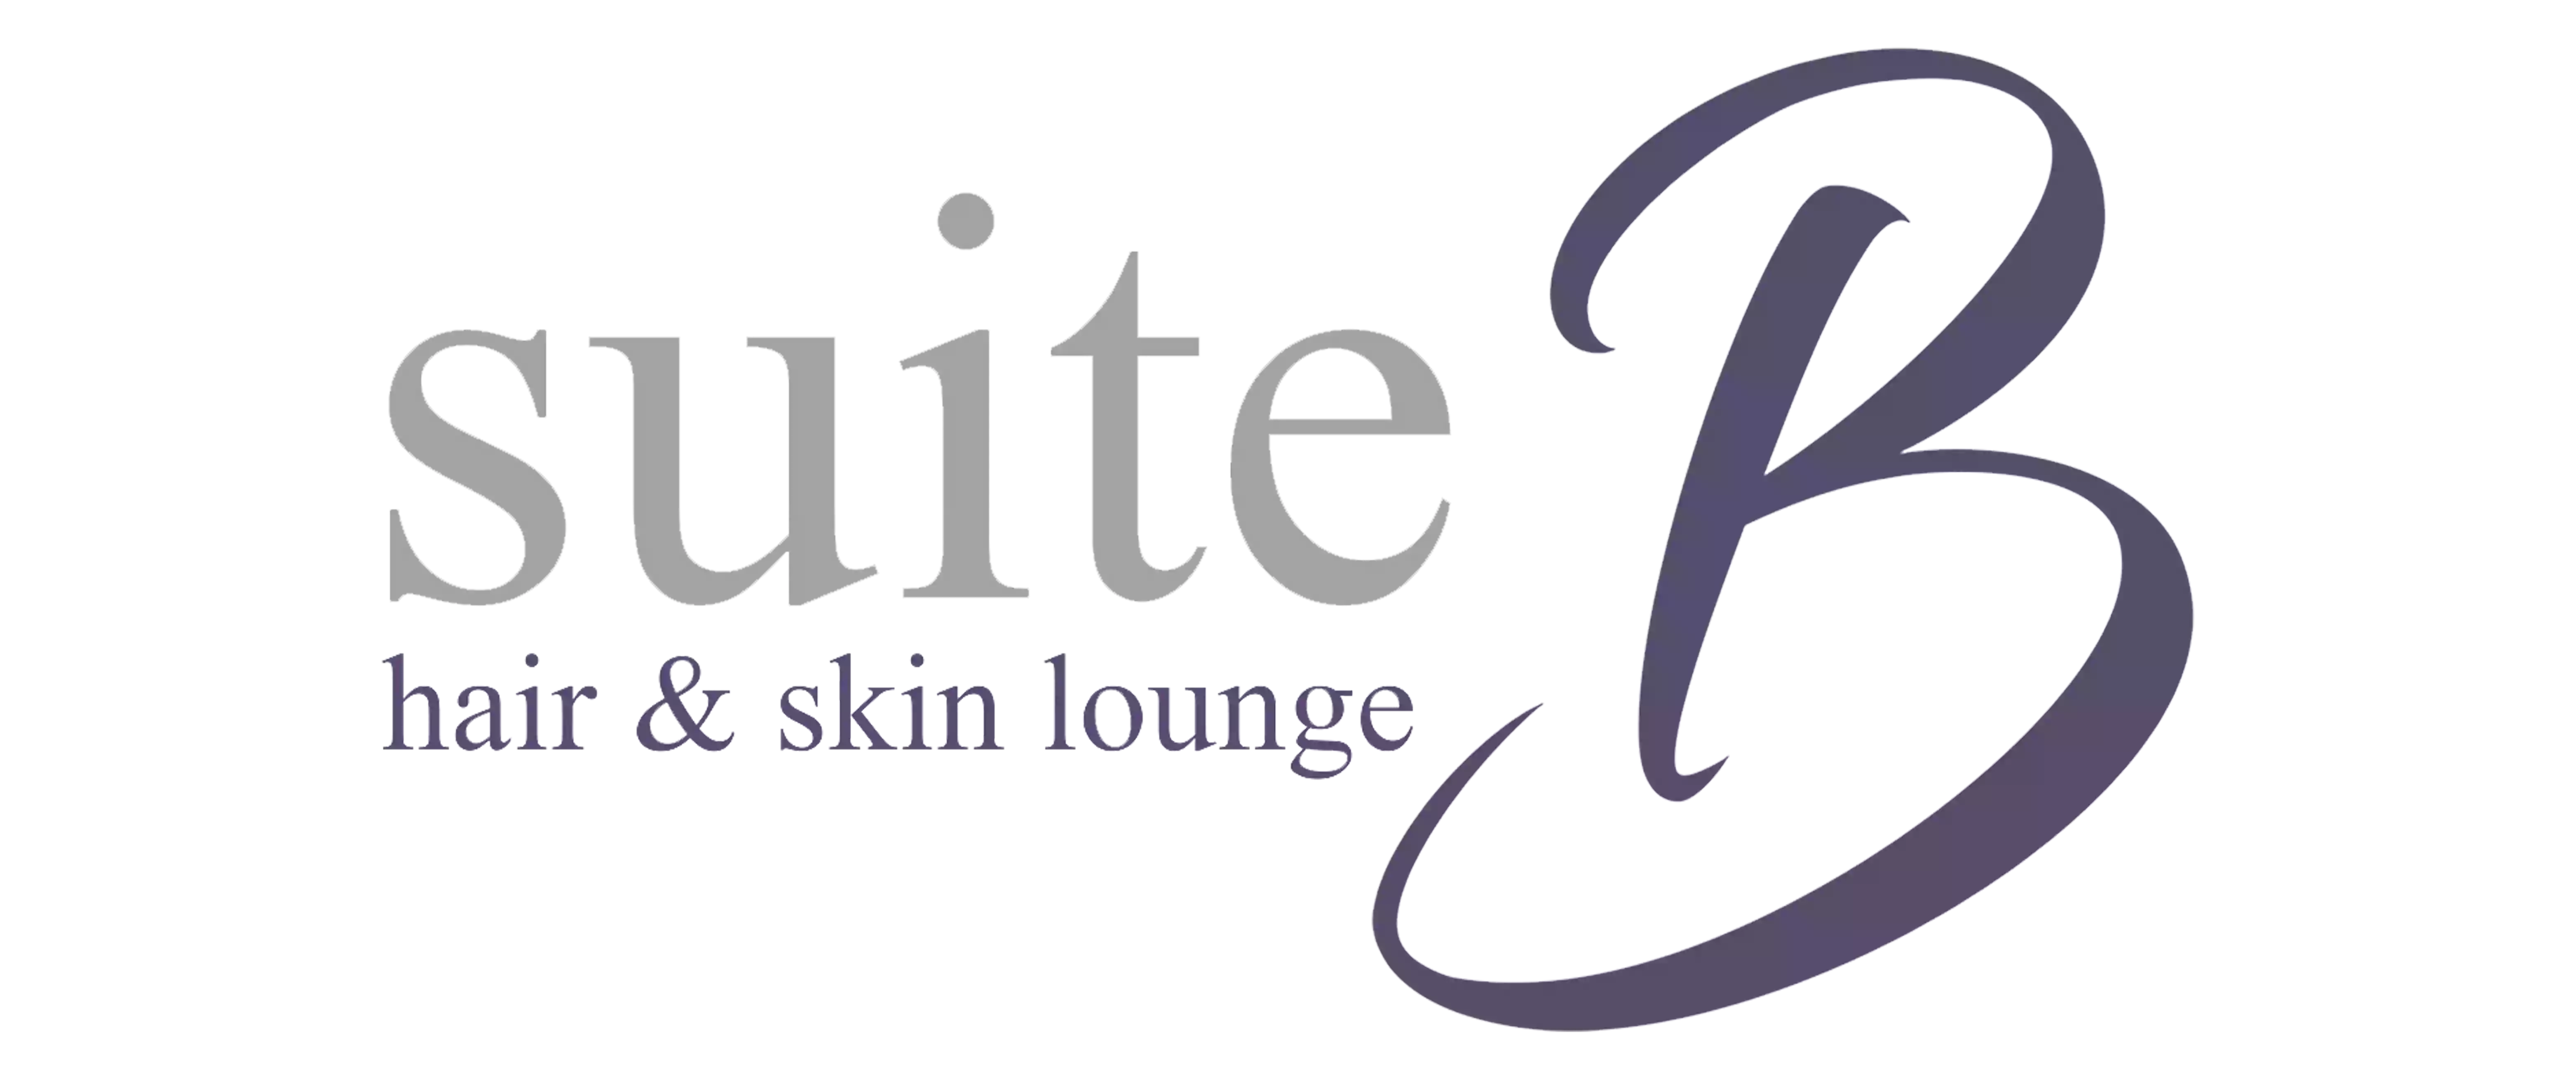 Suite B Hair & Skin Lounge